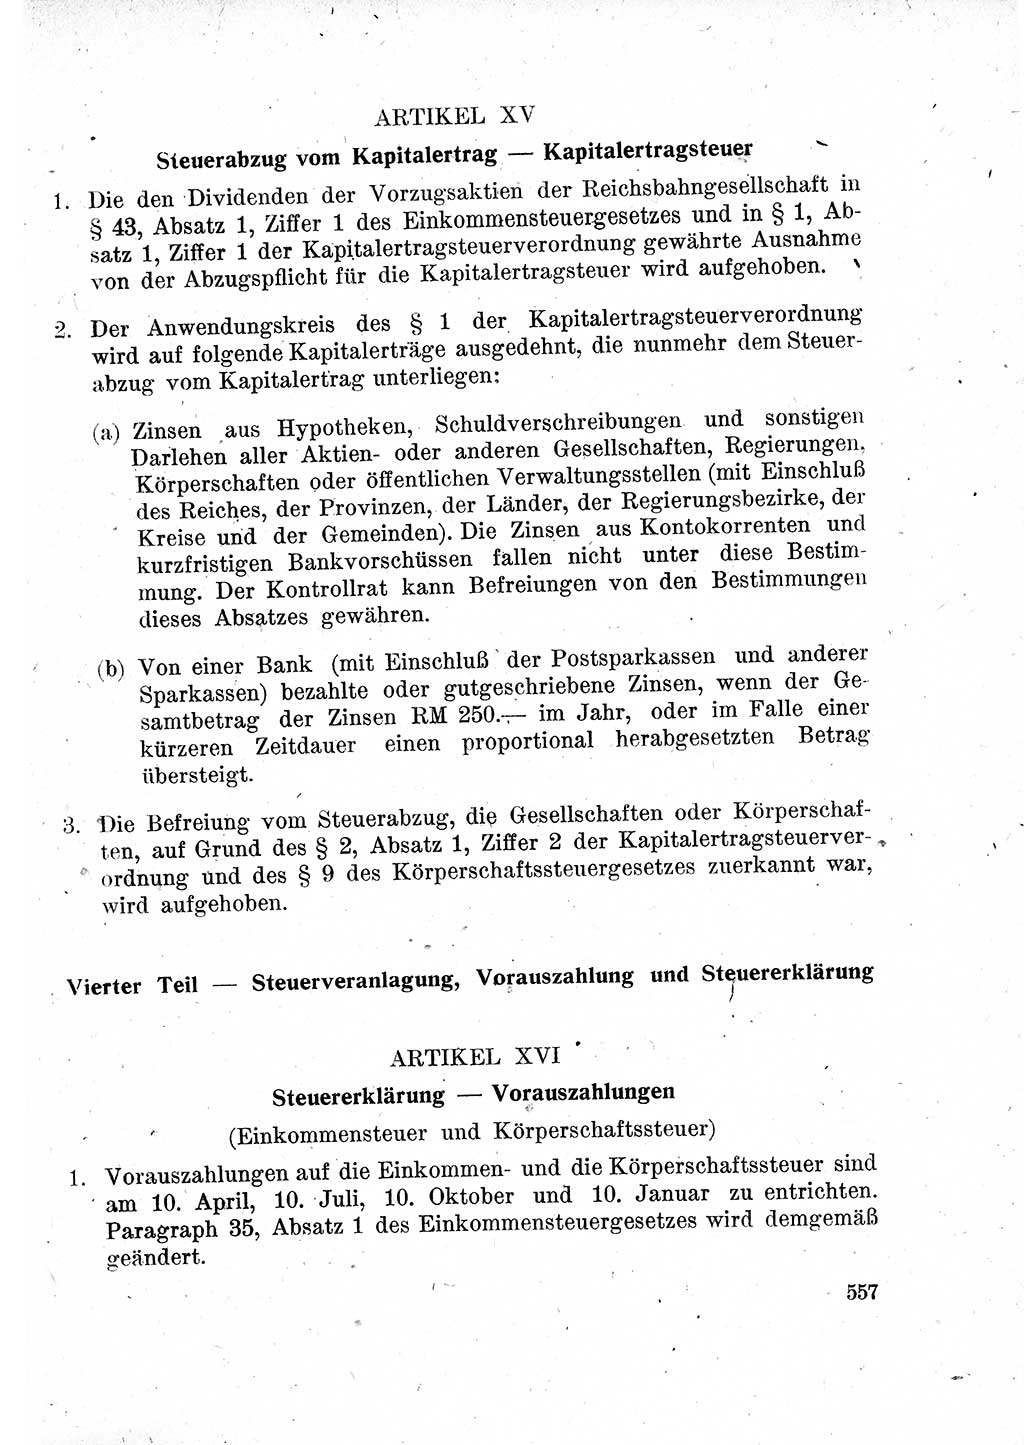 Das Recht der Besatzungsmacht (Deutschland), Proklamationen, Deklerationen, Verordnungen, Gesetze und Bekanntmachungen 1947, Seite 557 (R. Bes. Dtl. 1947, S. 557)